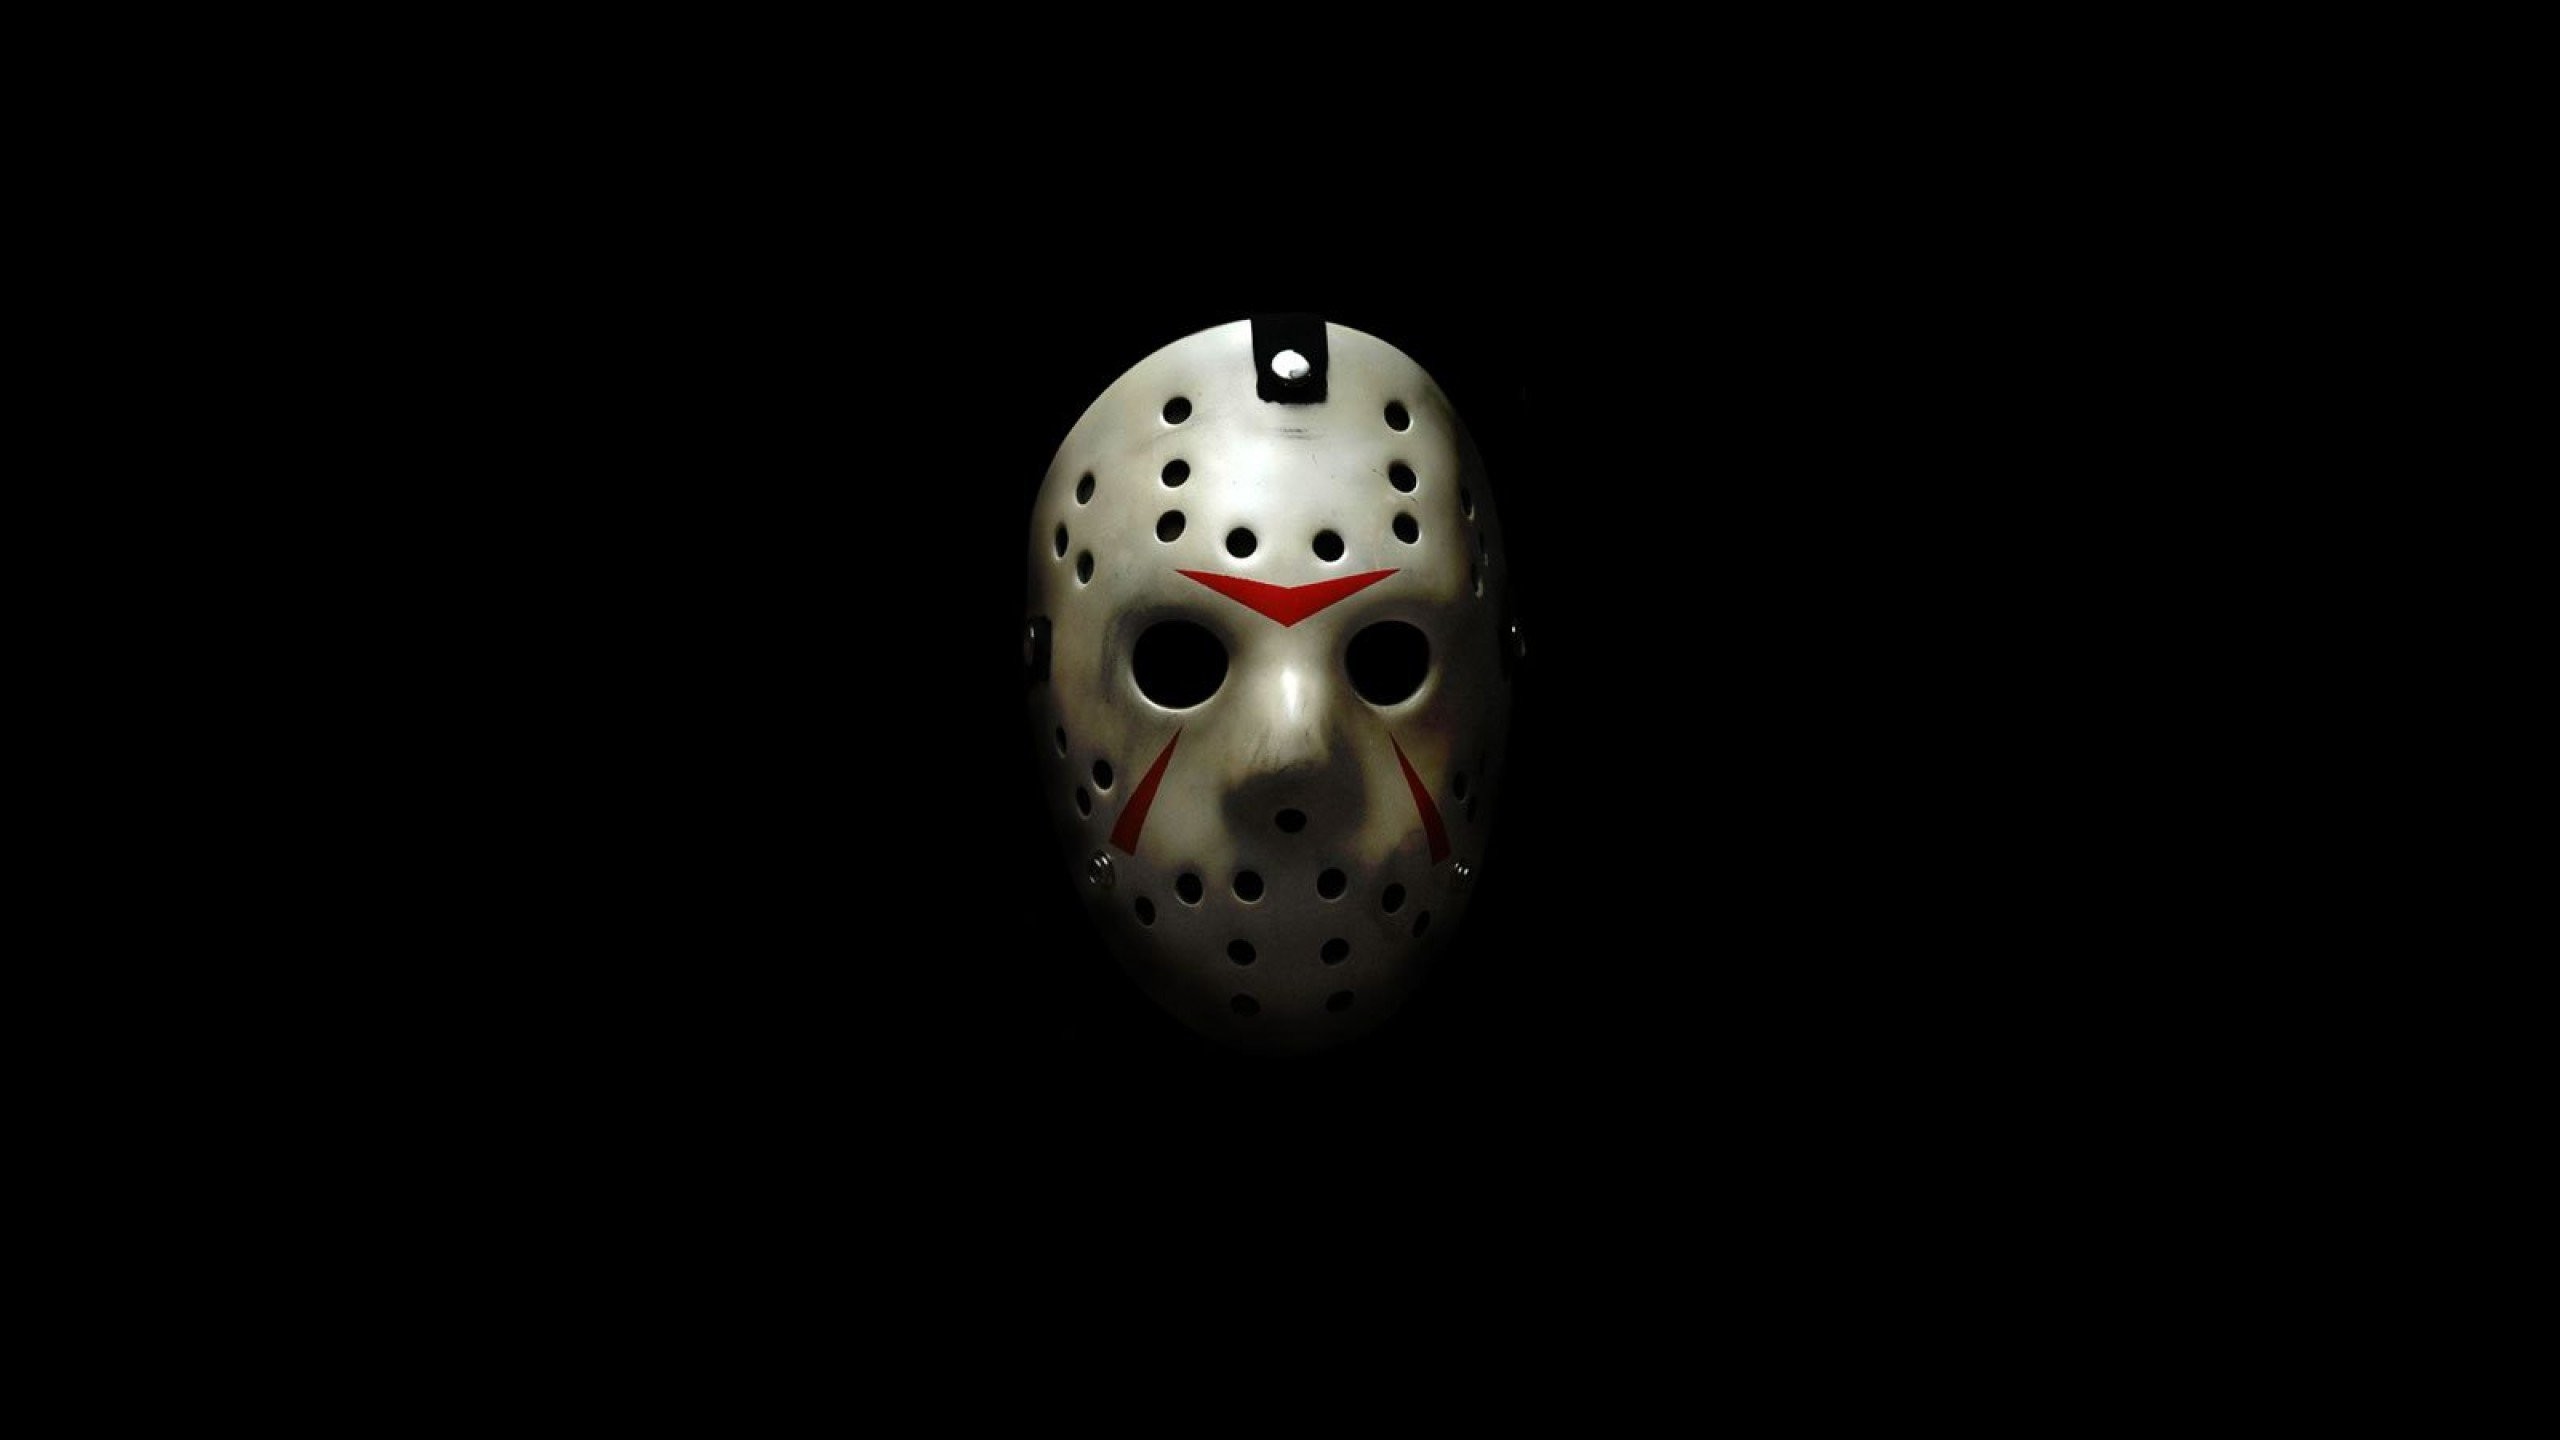 2560x1440 FRIDAY 13TH dark horror violence killer jason thriller fridayhorror  halloween mask wallpaper |  | 604222 | WallpaperUP